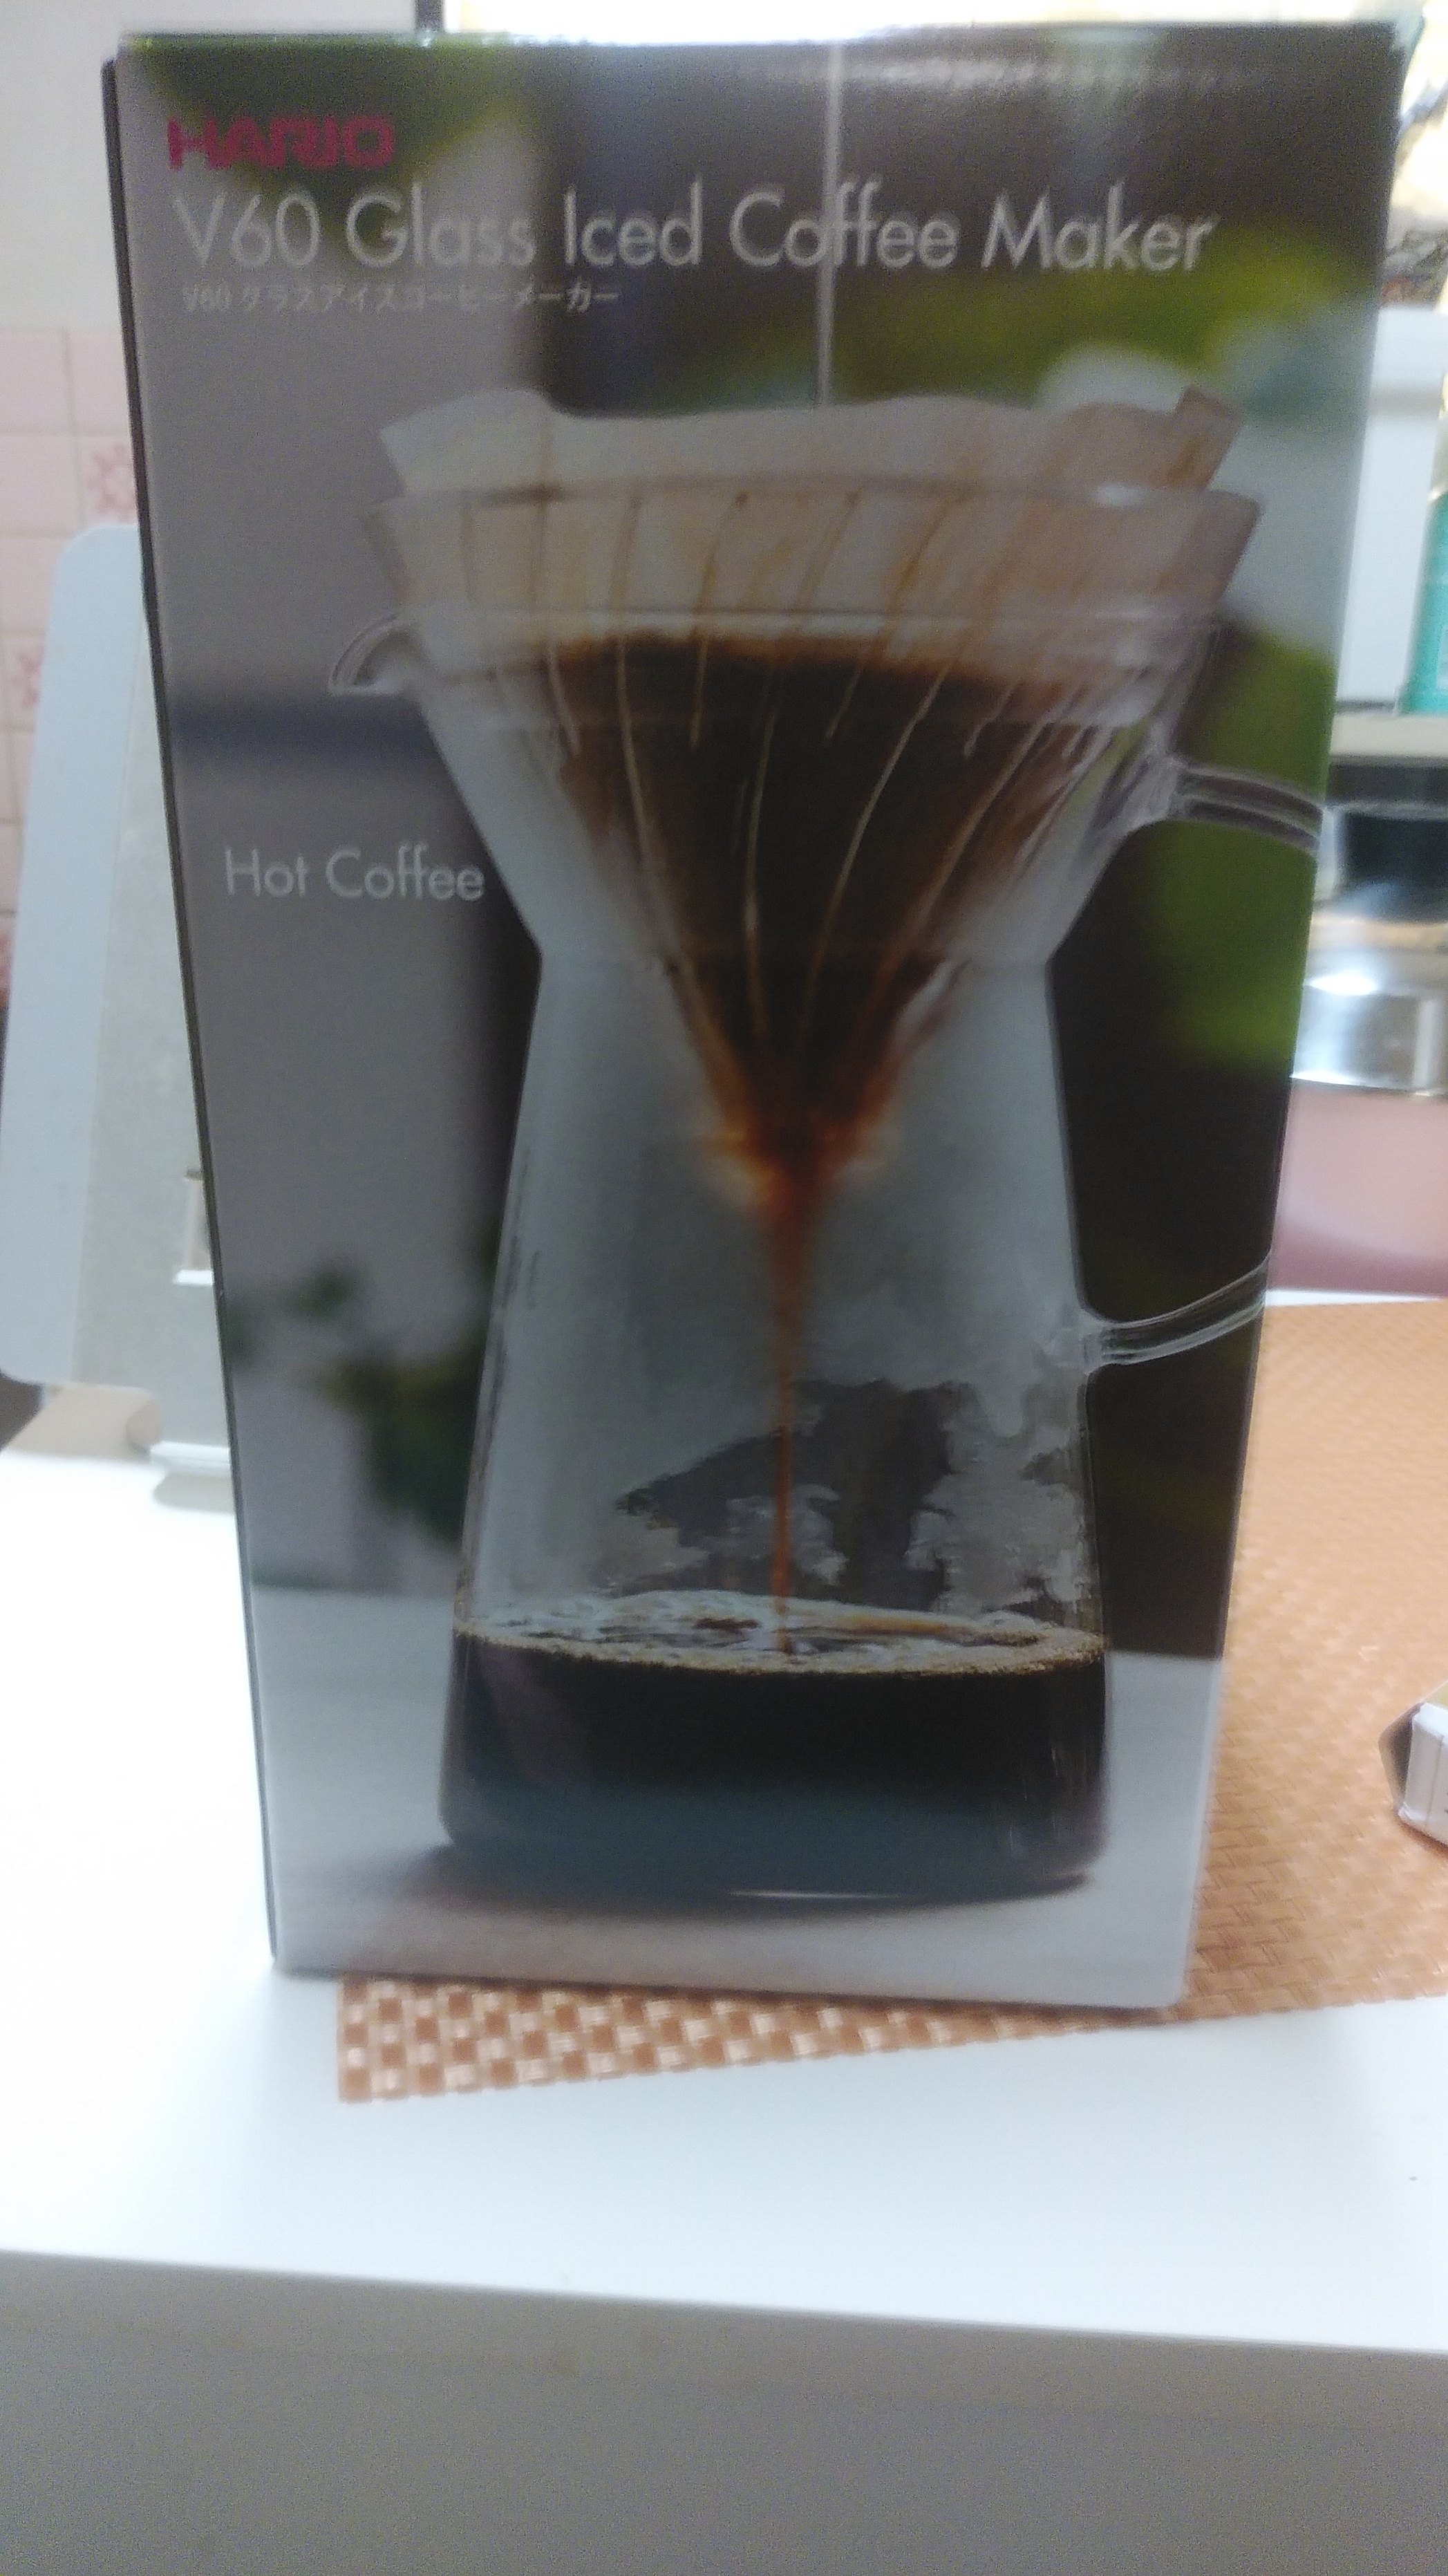 HARIO(ハリオ) マルチ V60 グラス アイスコーヒー メーカー VIG-02Tを使ったまいかるさんのクチコミ画像1